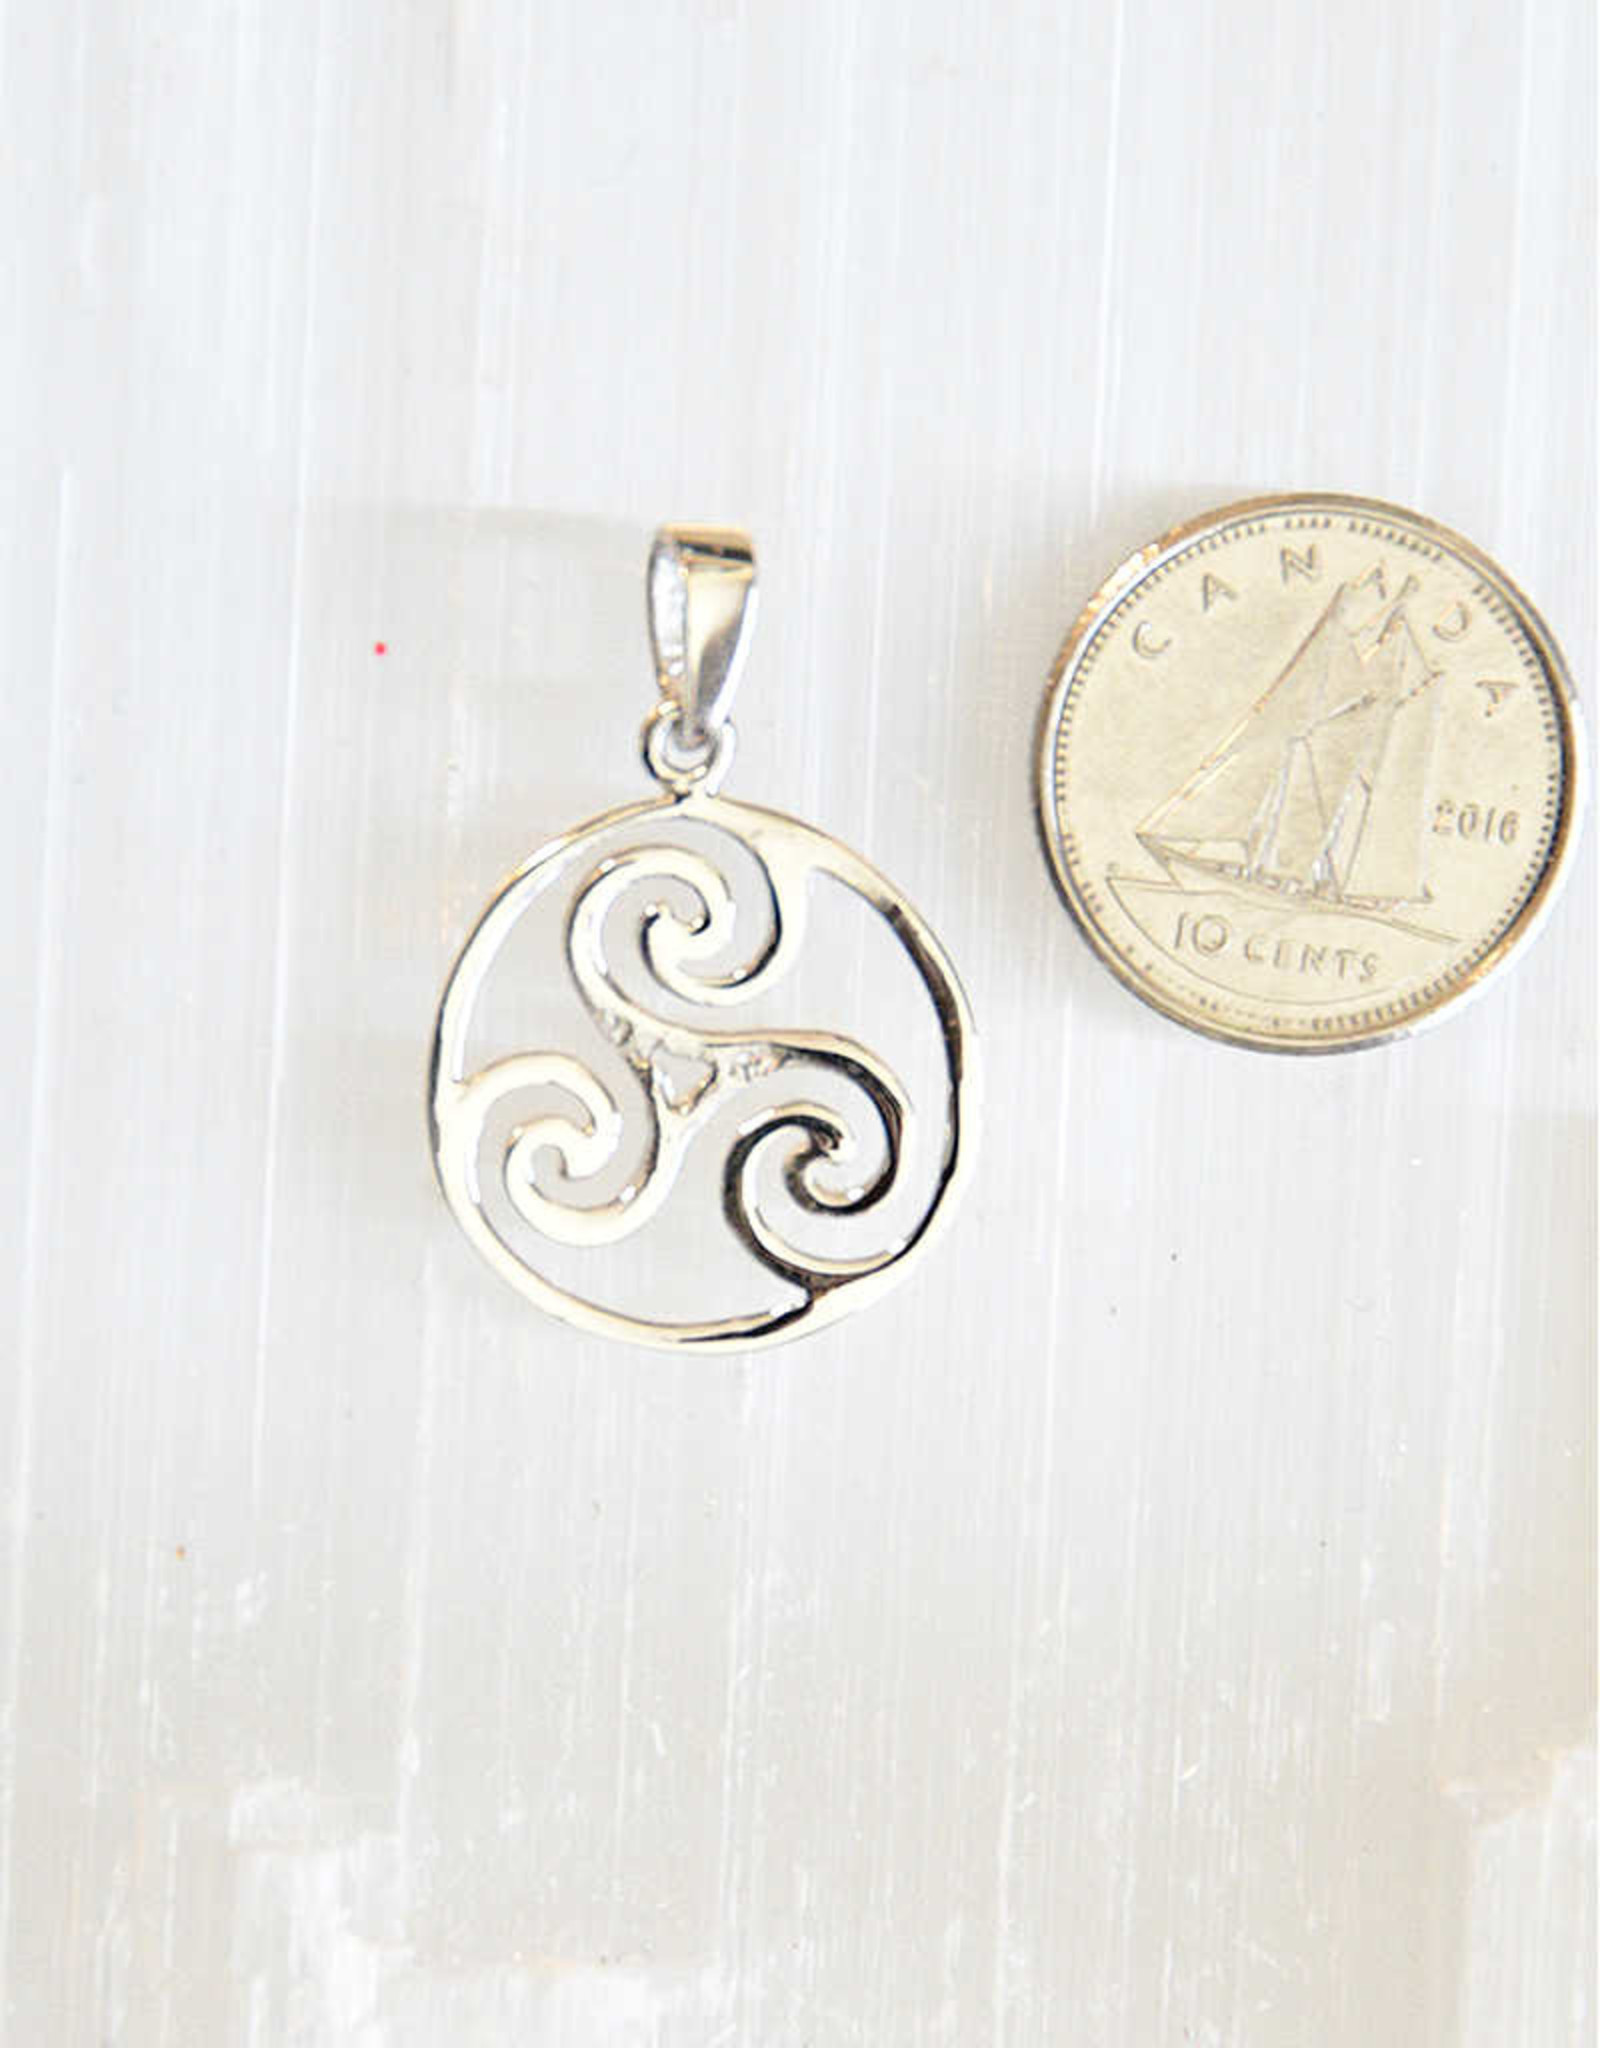 Celtic Spiral Sterling Silver Pendant - 5/8"